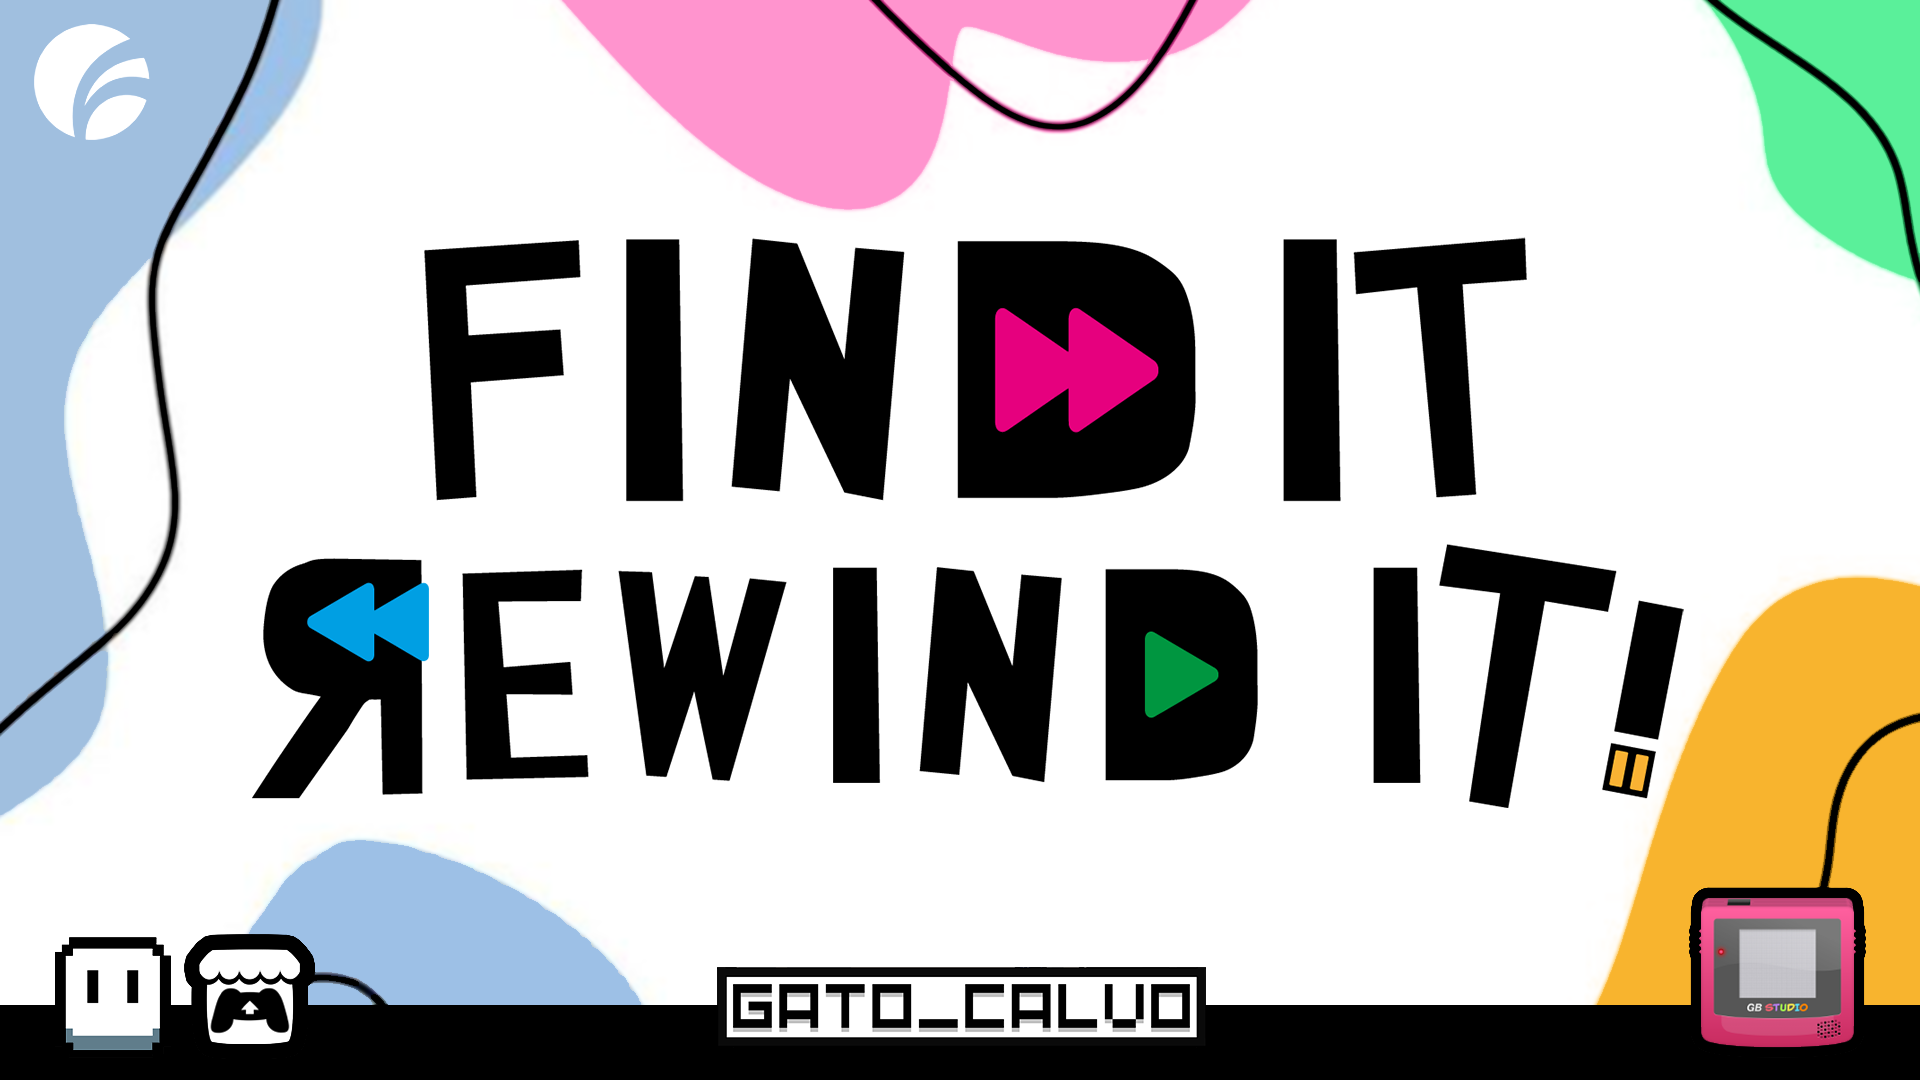 FIRI - Find It, Rewind It!